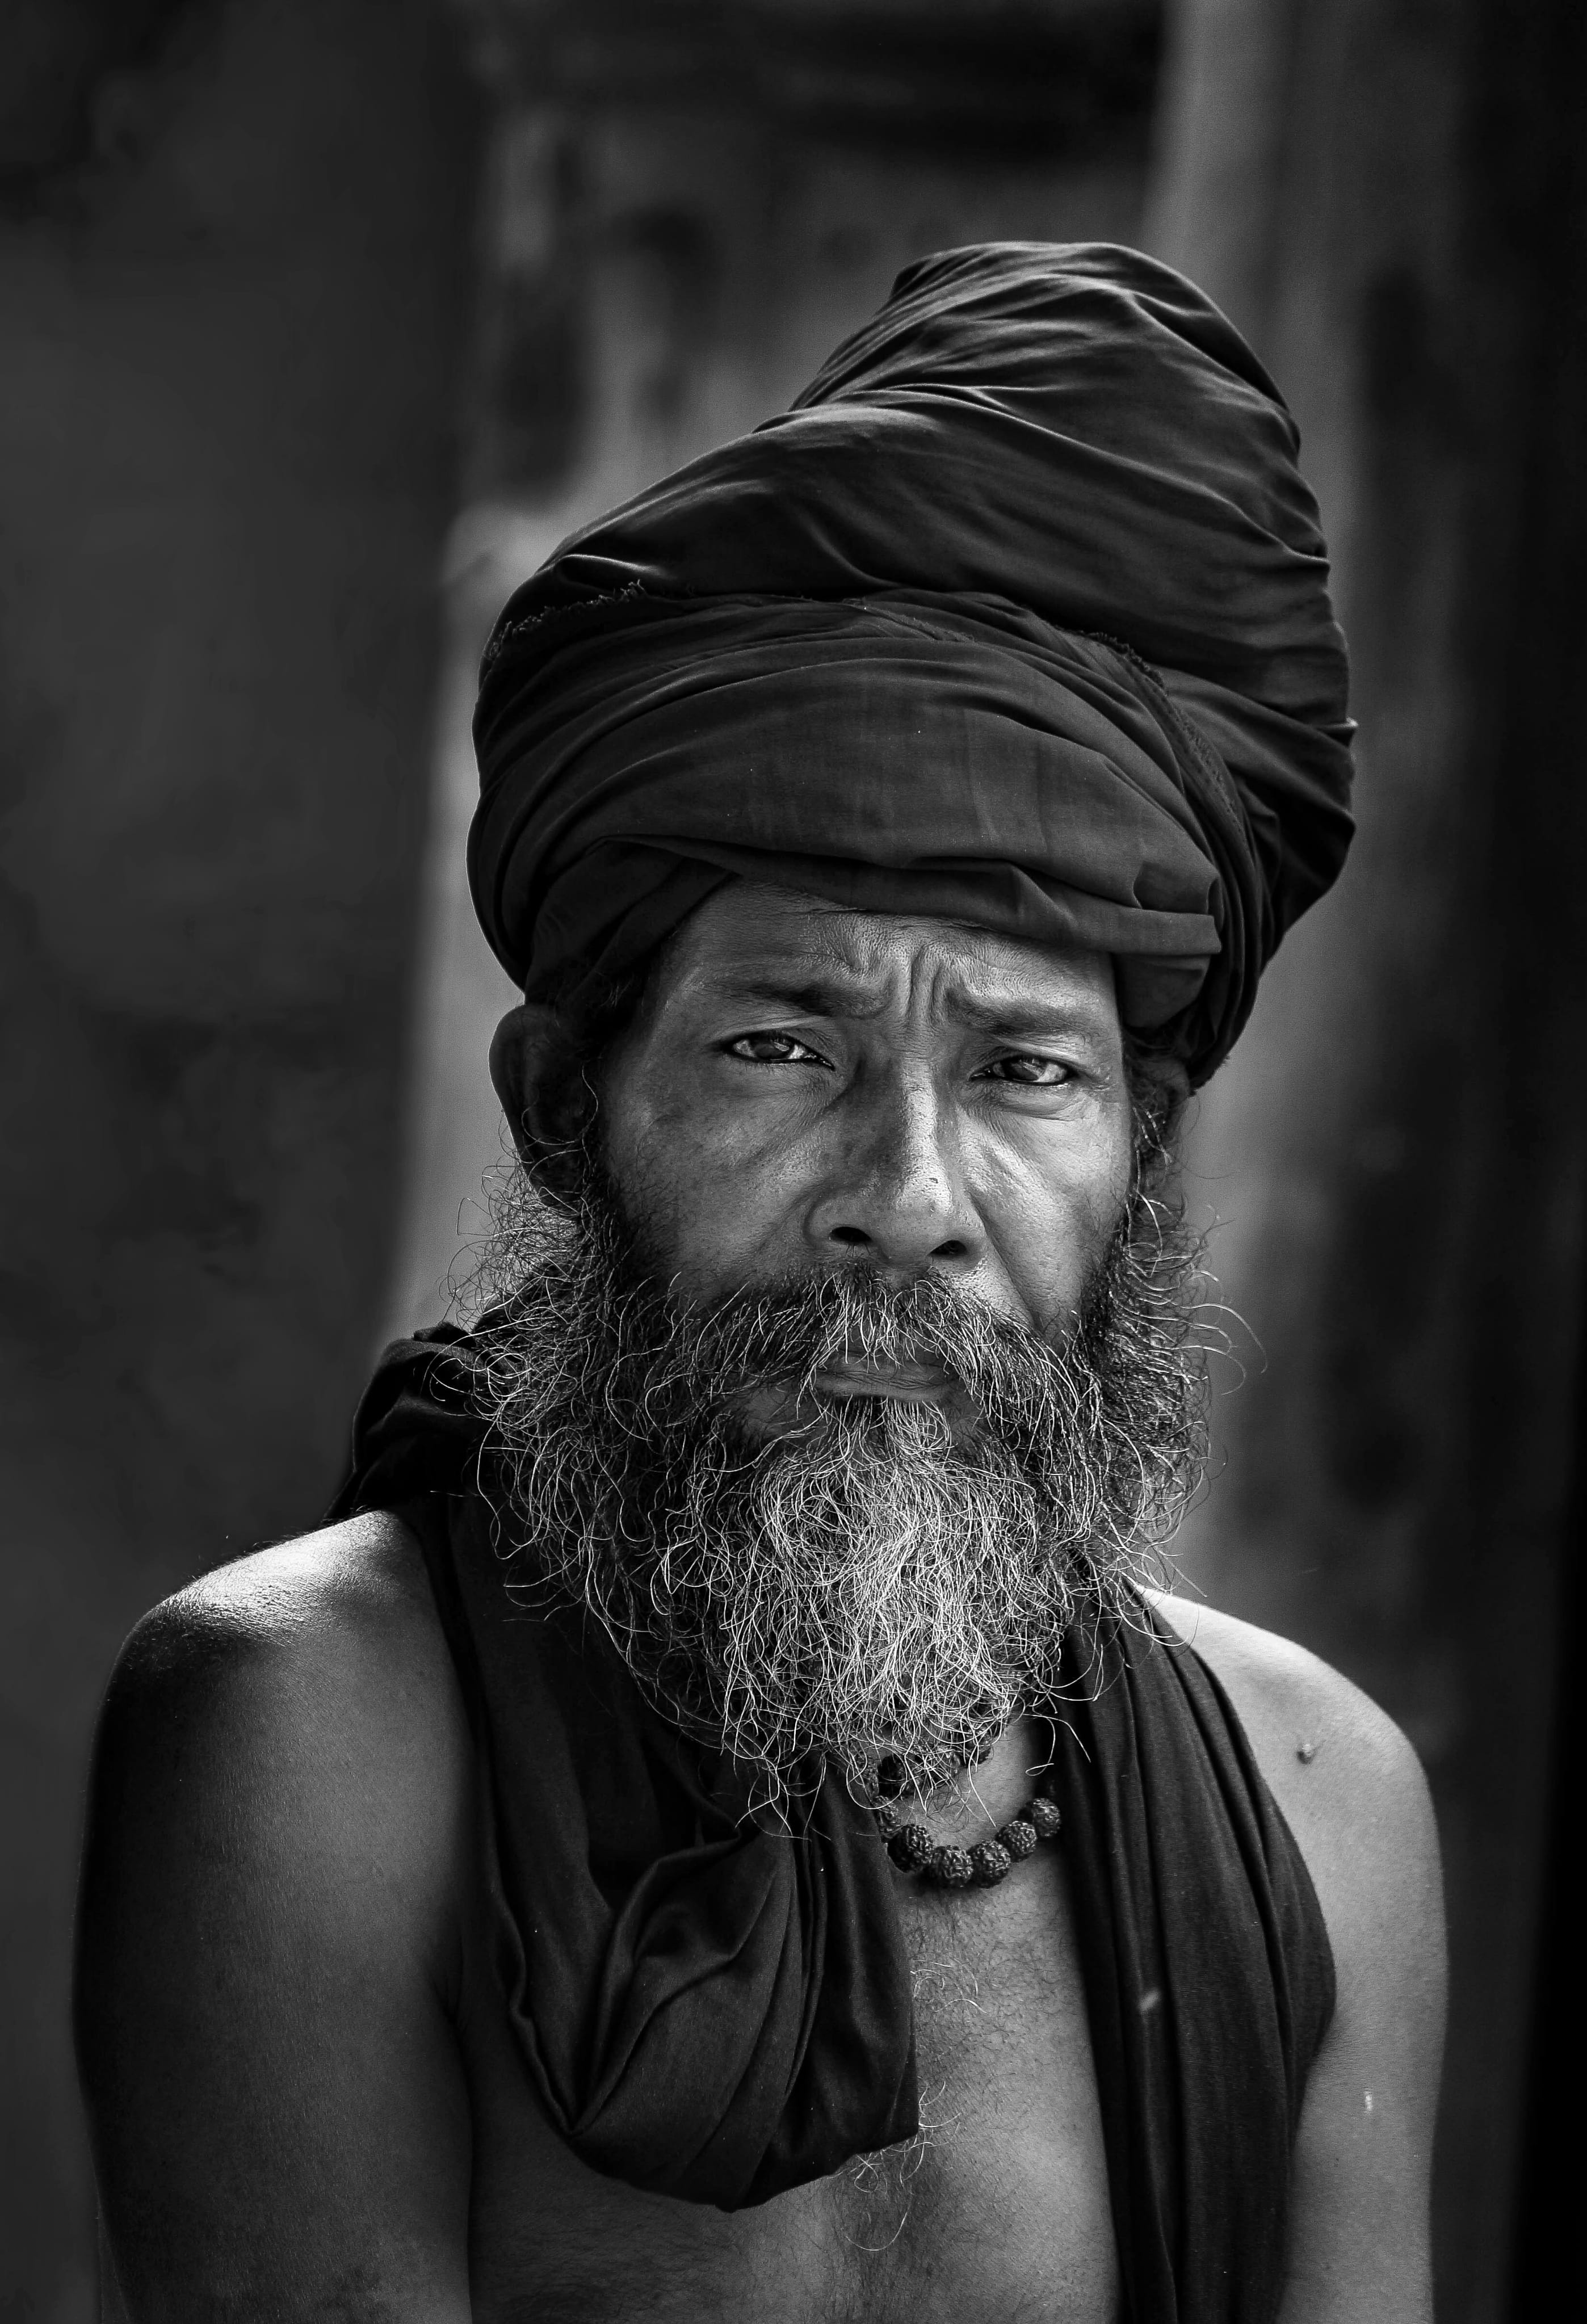 man wearing black turban hat, portrait, beard, indian man, elderly